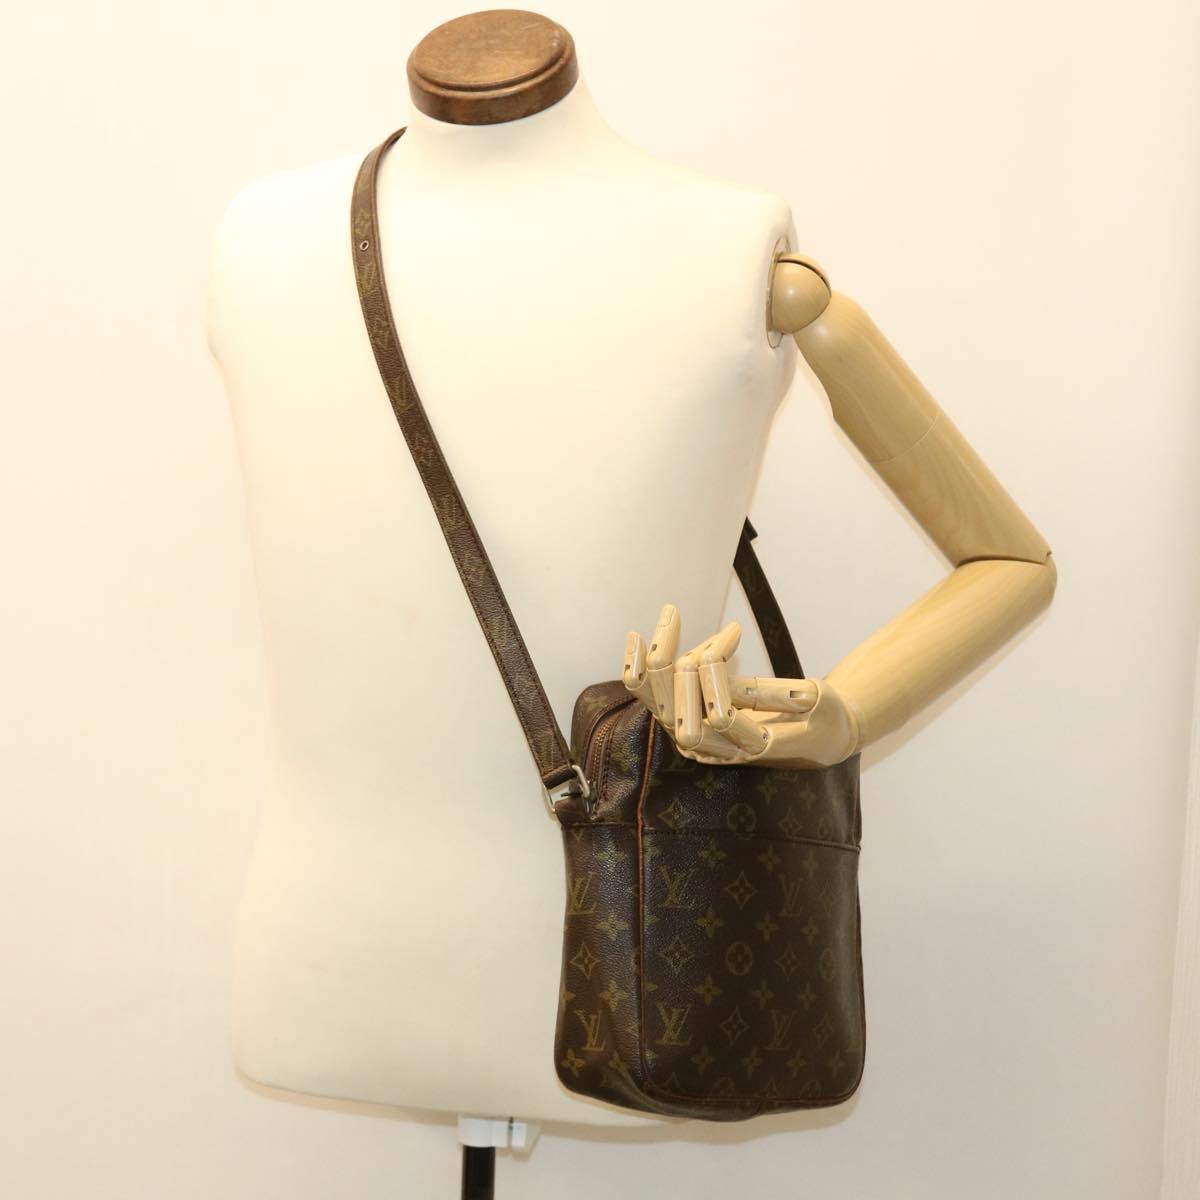 Louis-Vuitton-Monogram-Petit-Marceau-Shoulder-Bag-No.71 – dct